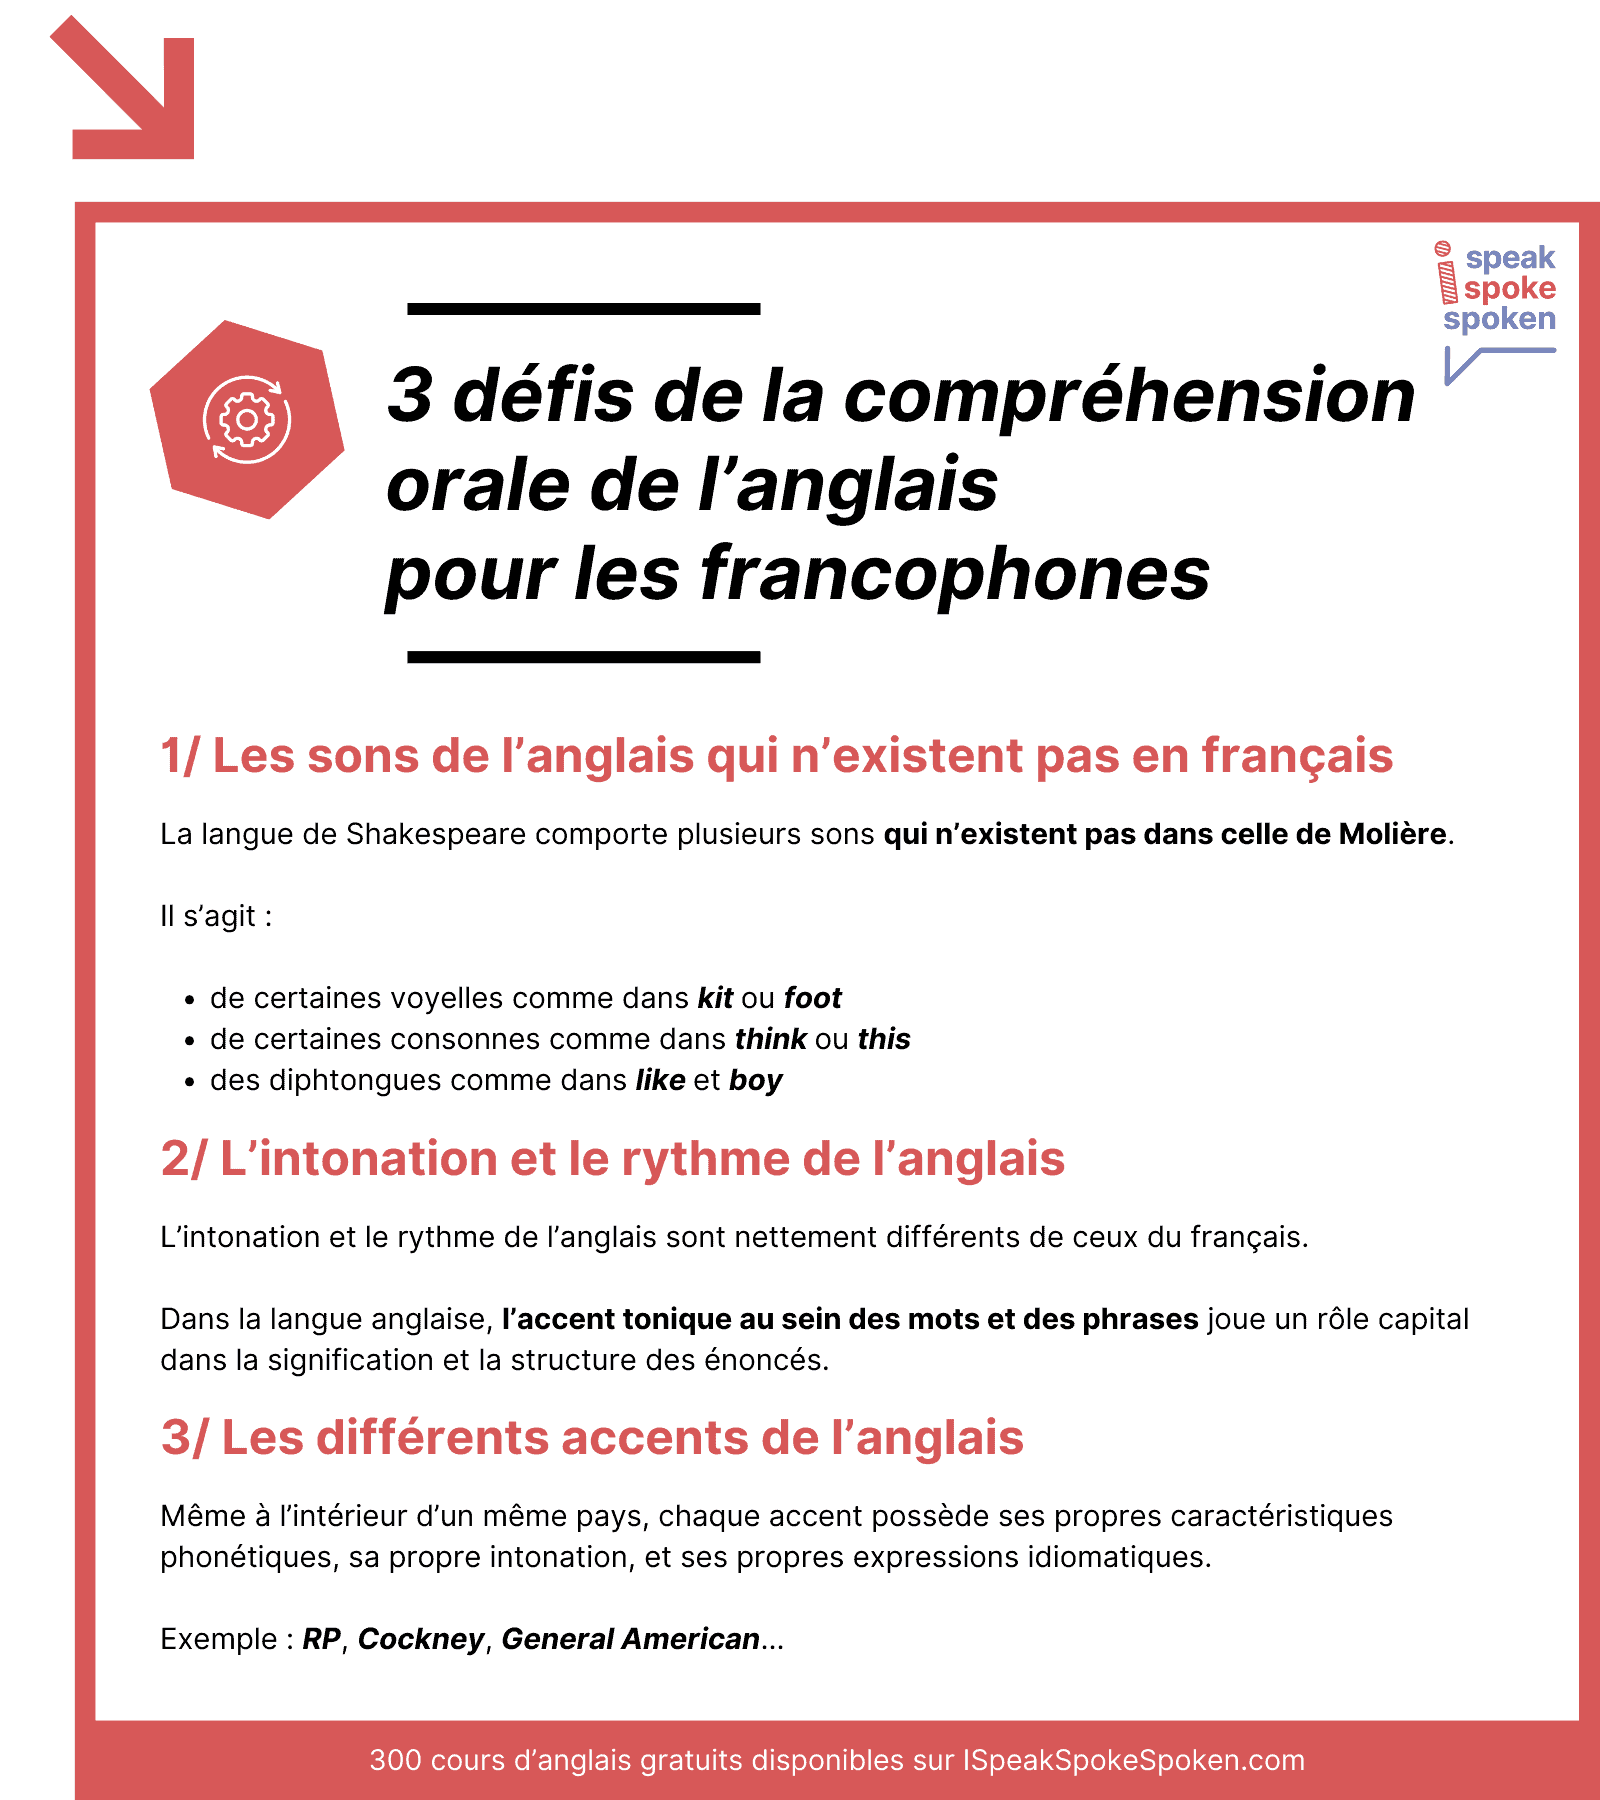 Les 3 défis de la compréhension orale de l’anglais pour les francophones